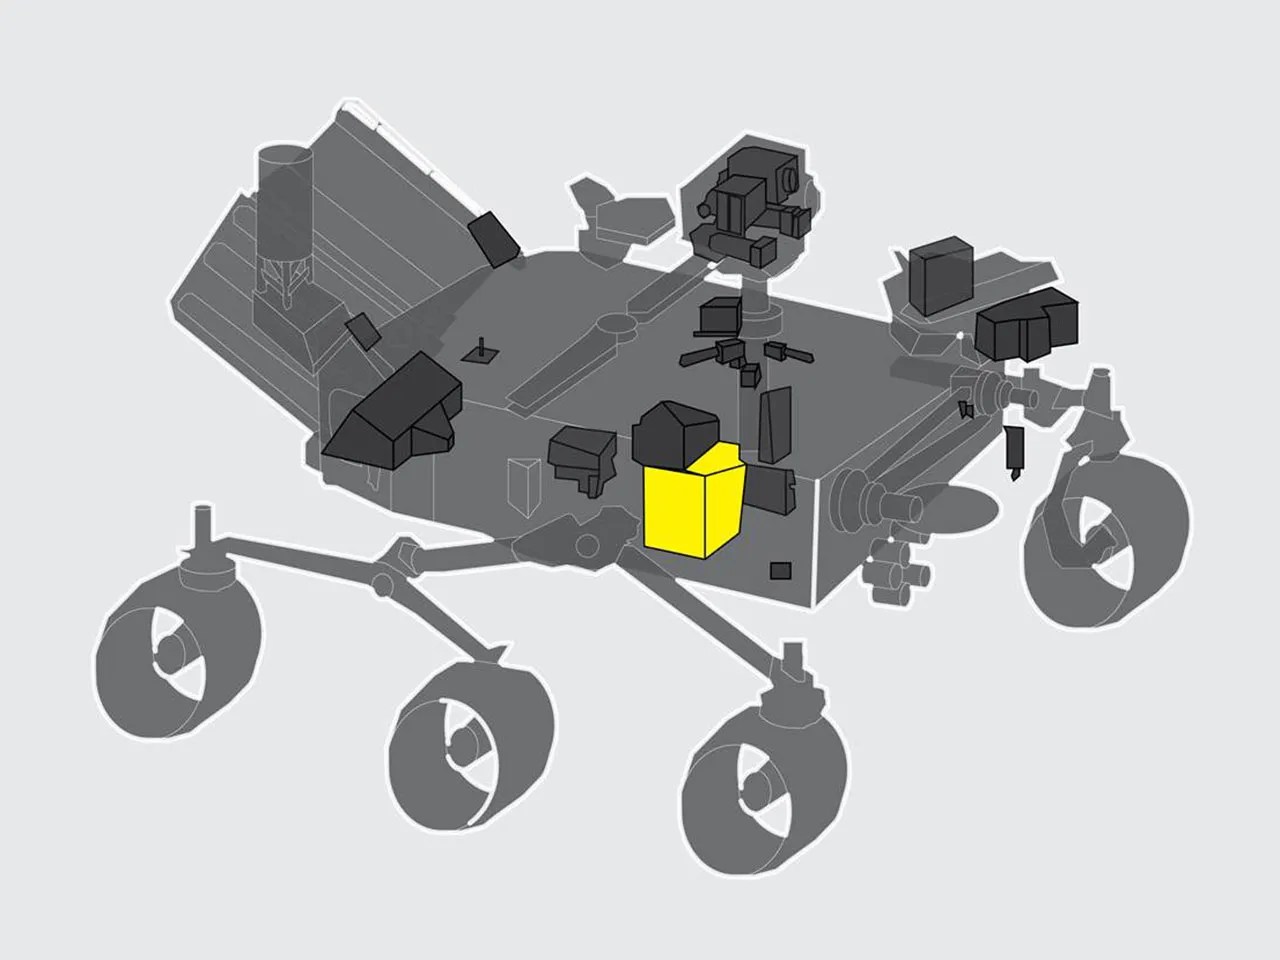 MOXIE destacado en el Rover Marte 2020.